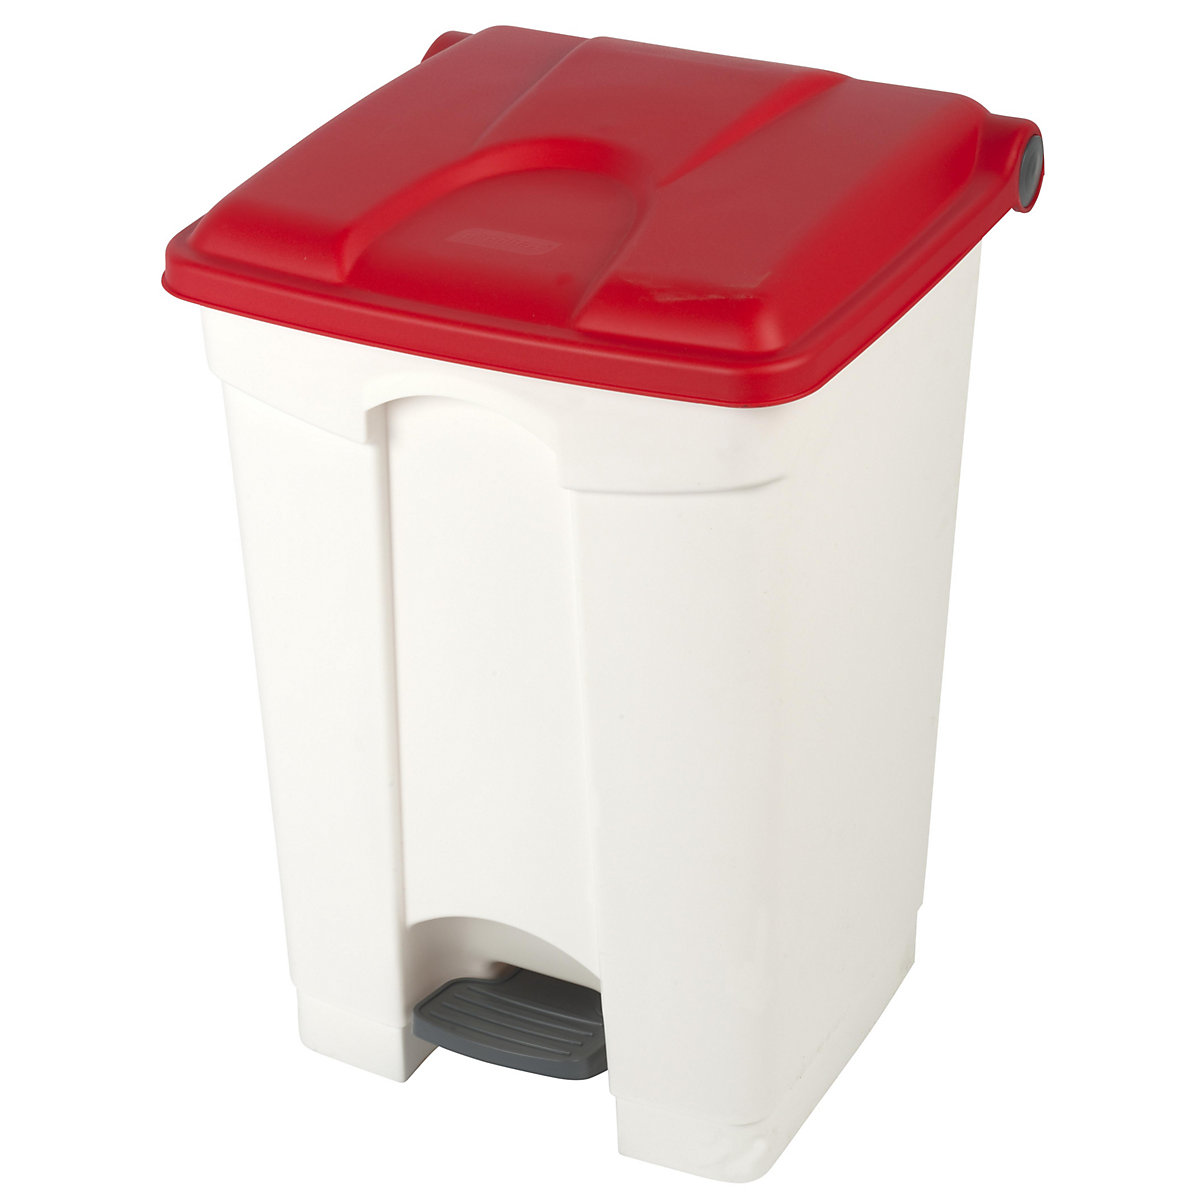 EUROKRAFTbasic – Nádoba na odpad s pedálem, objem 45 l, š x v x h 410 x 600 x 400 mm, bílá, červené víko